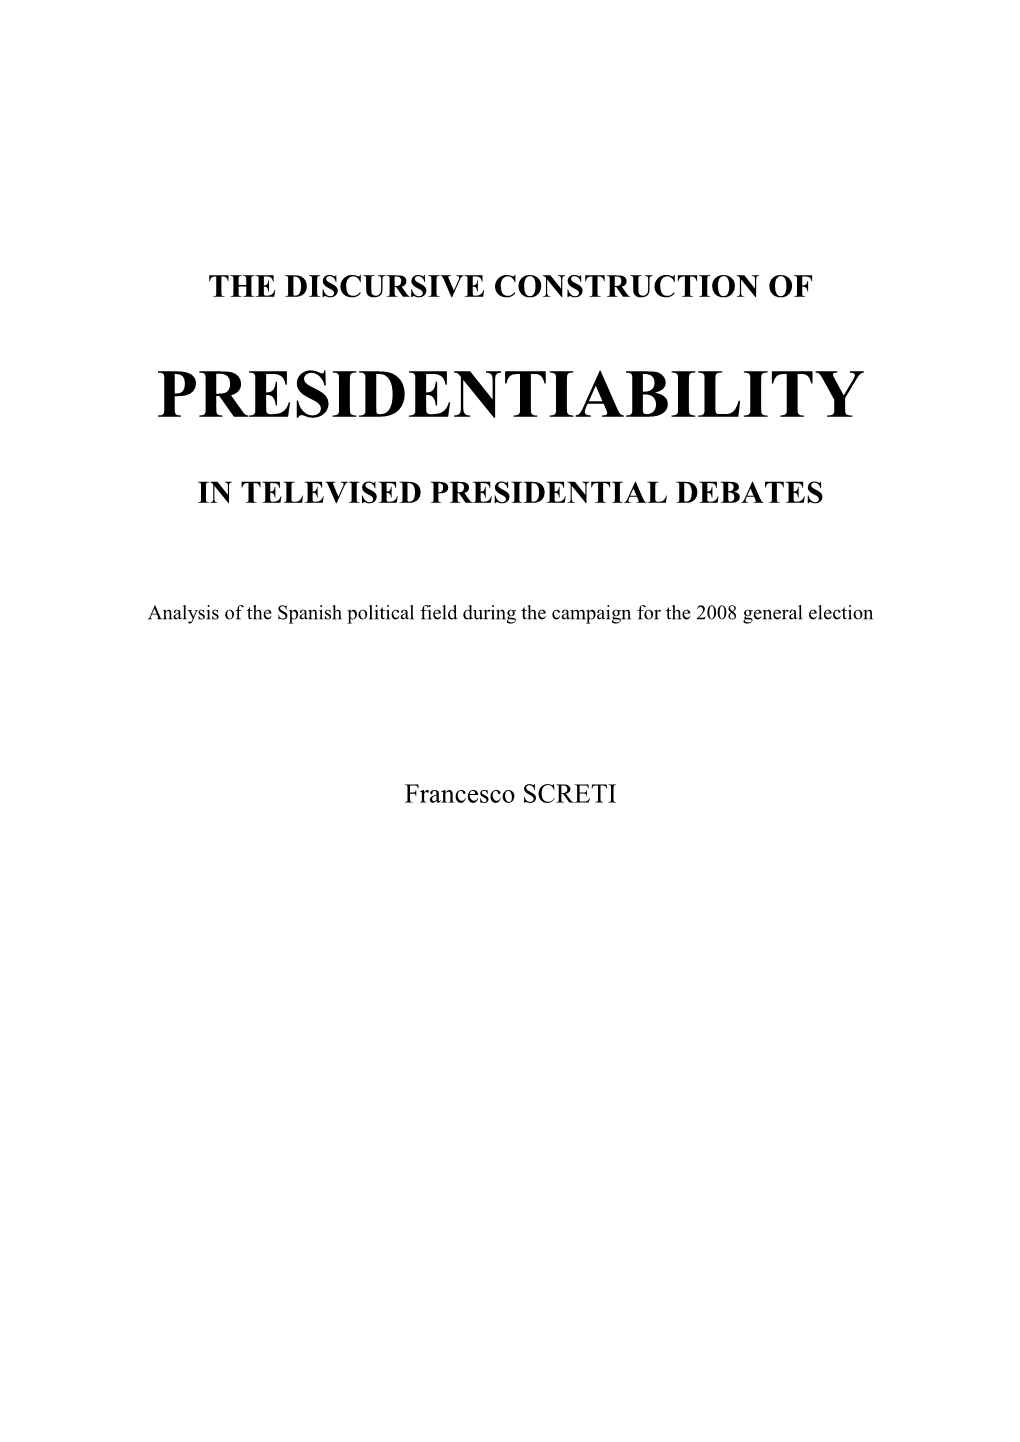 Presidentiability